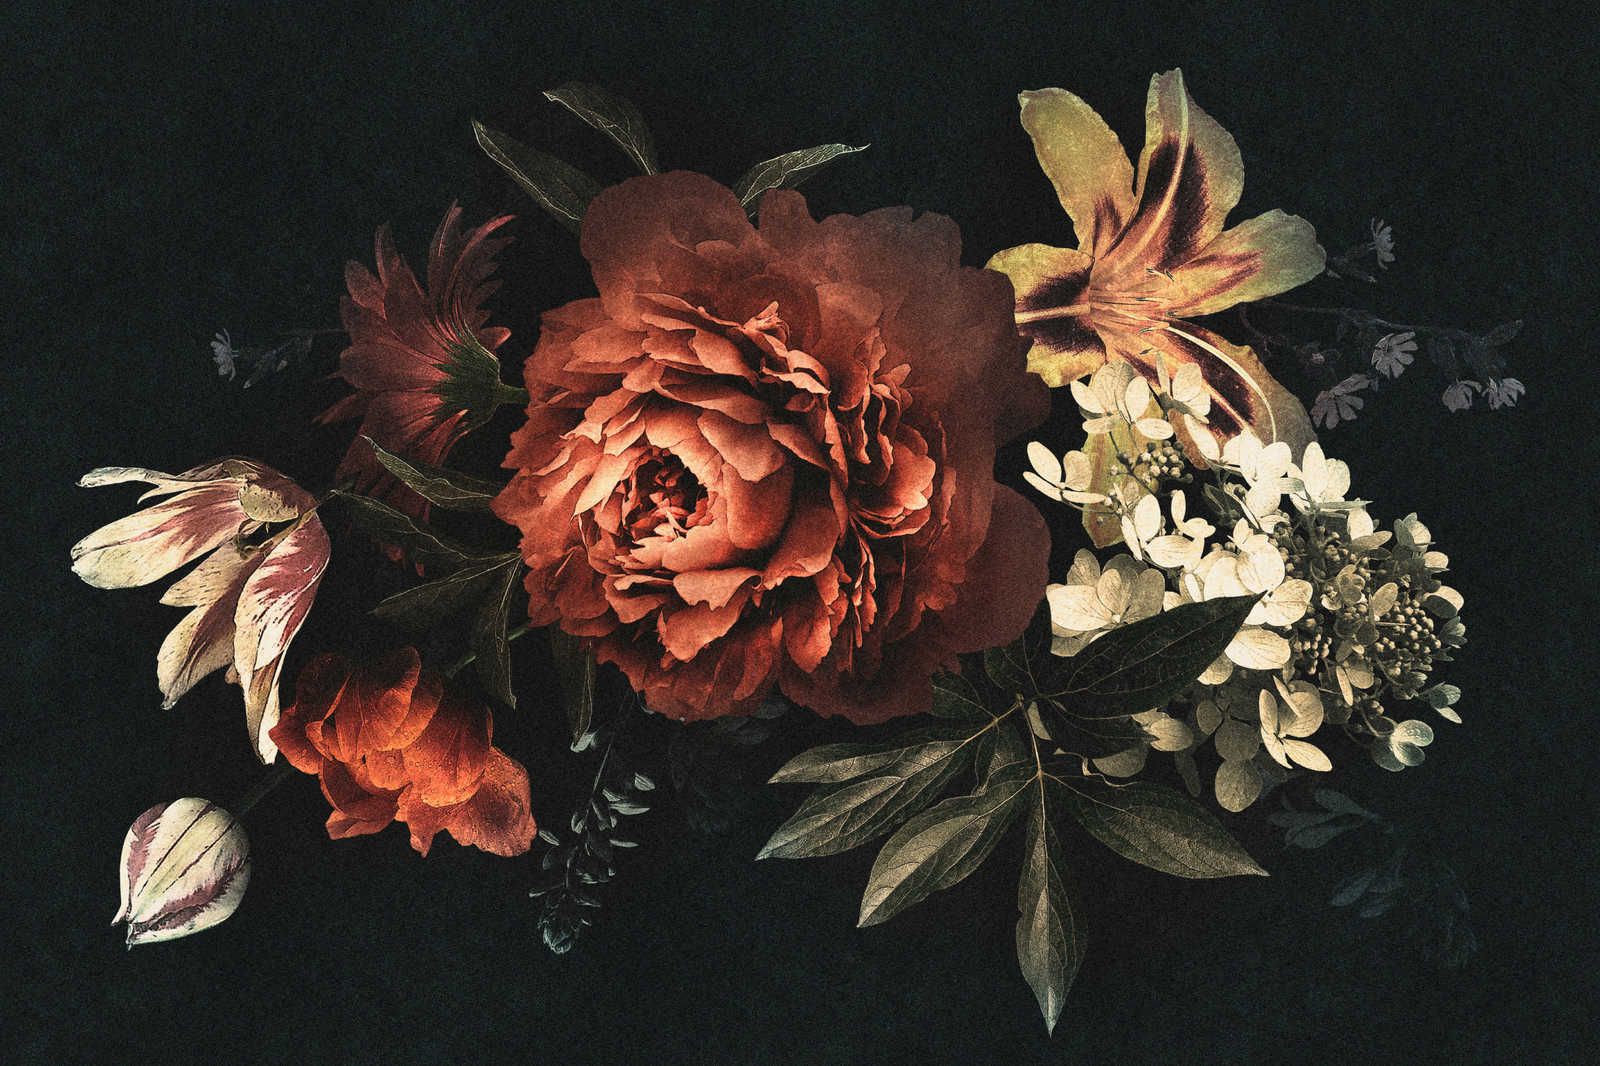             Drama queen 1 - Cuadro sobre lienzo Ramo de flores con fondo oscuro - 1,20 m x 0,80 m
        